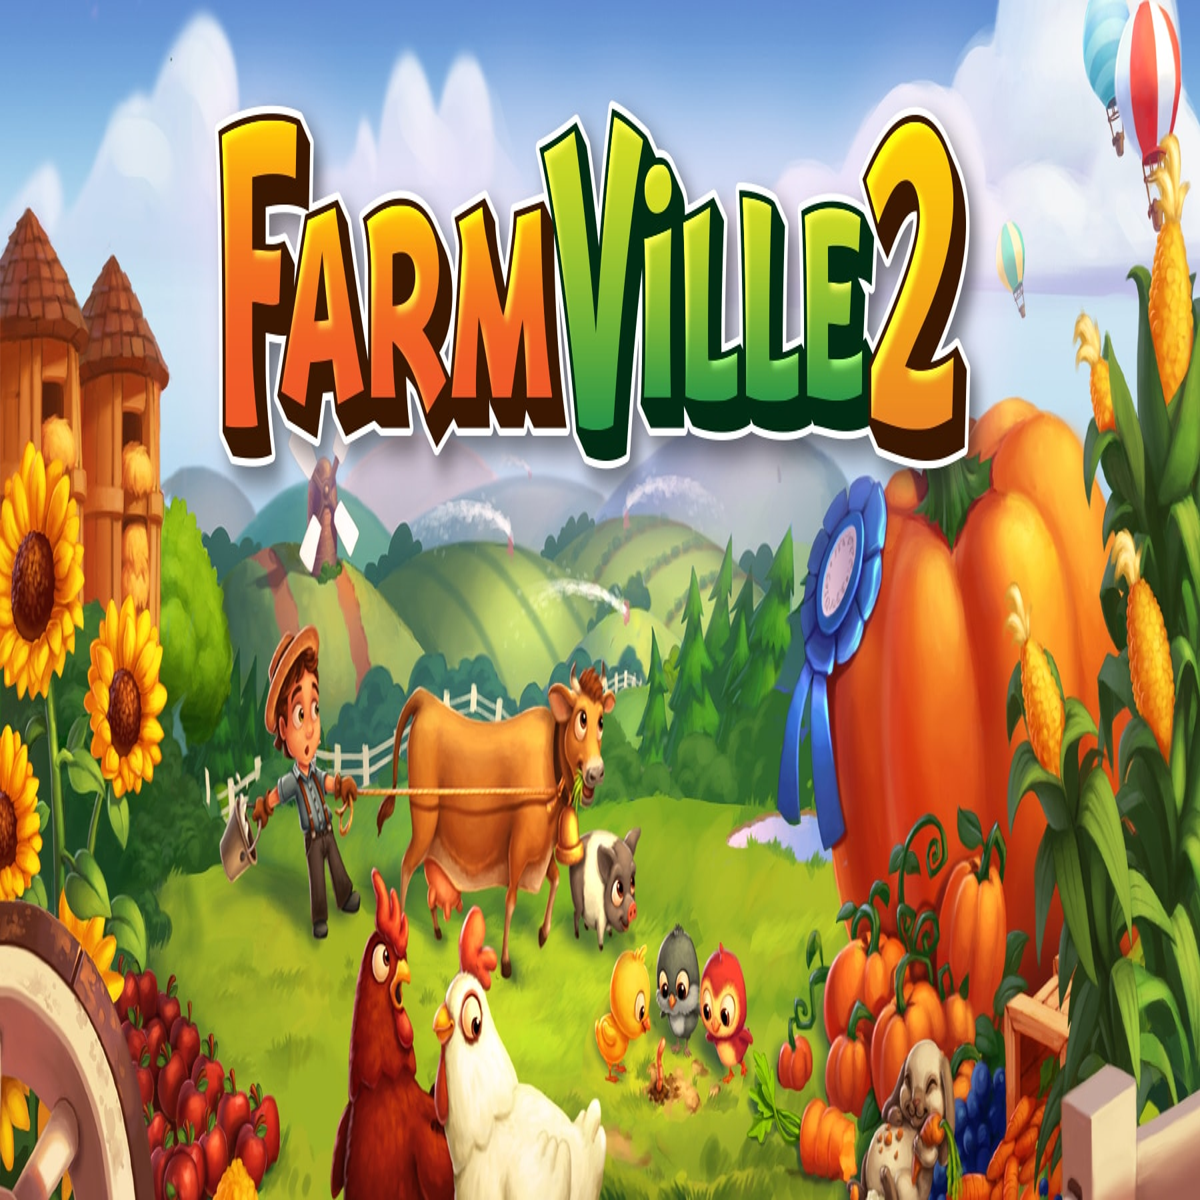 Farmville 2 Guide - IGN